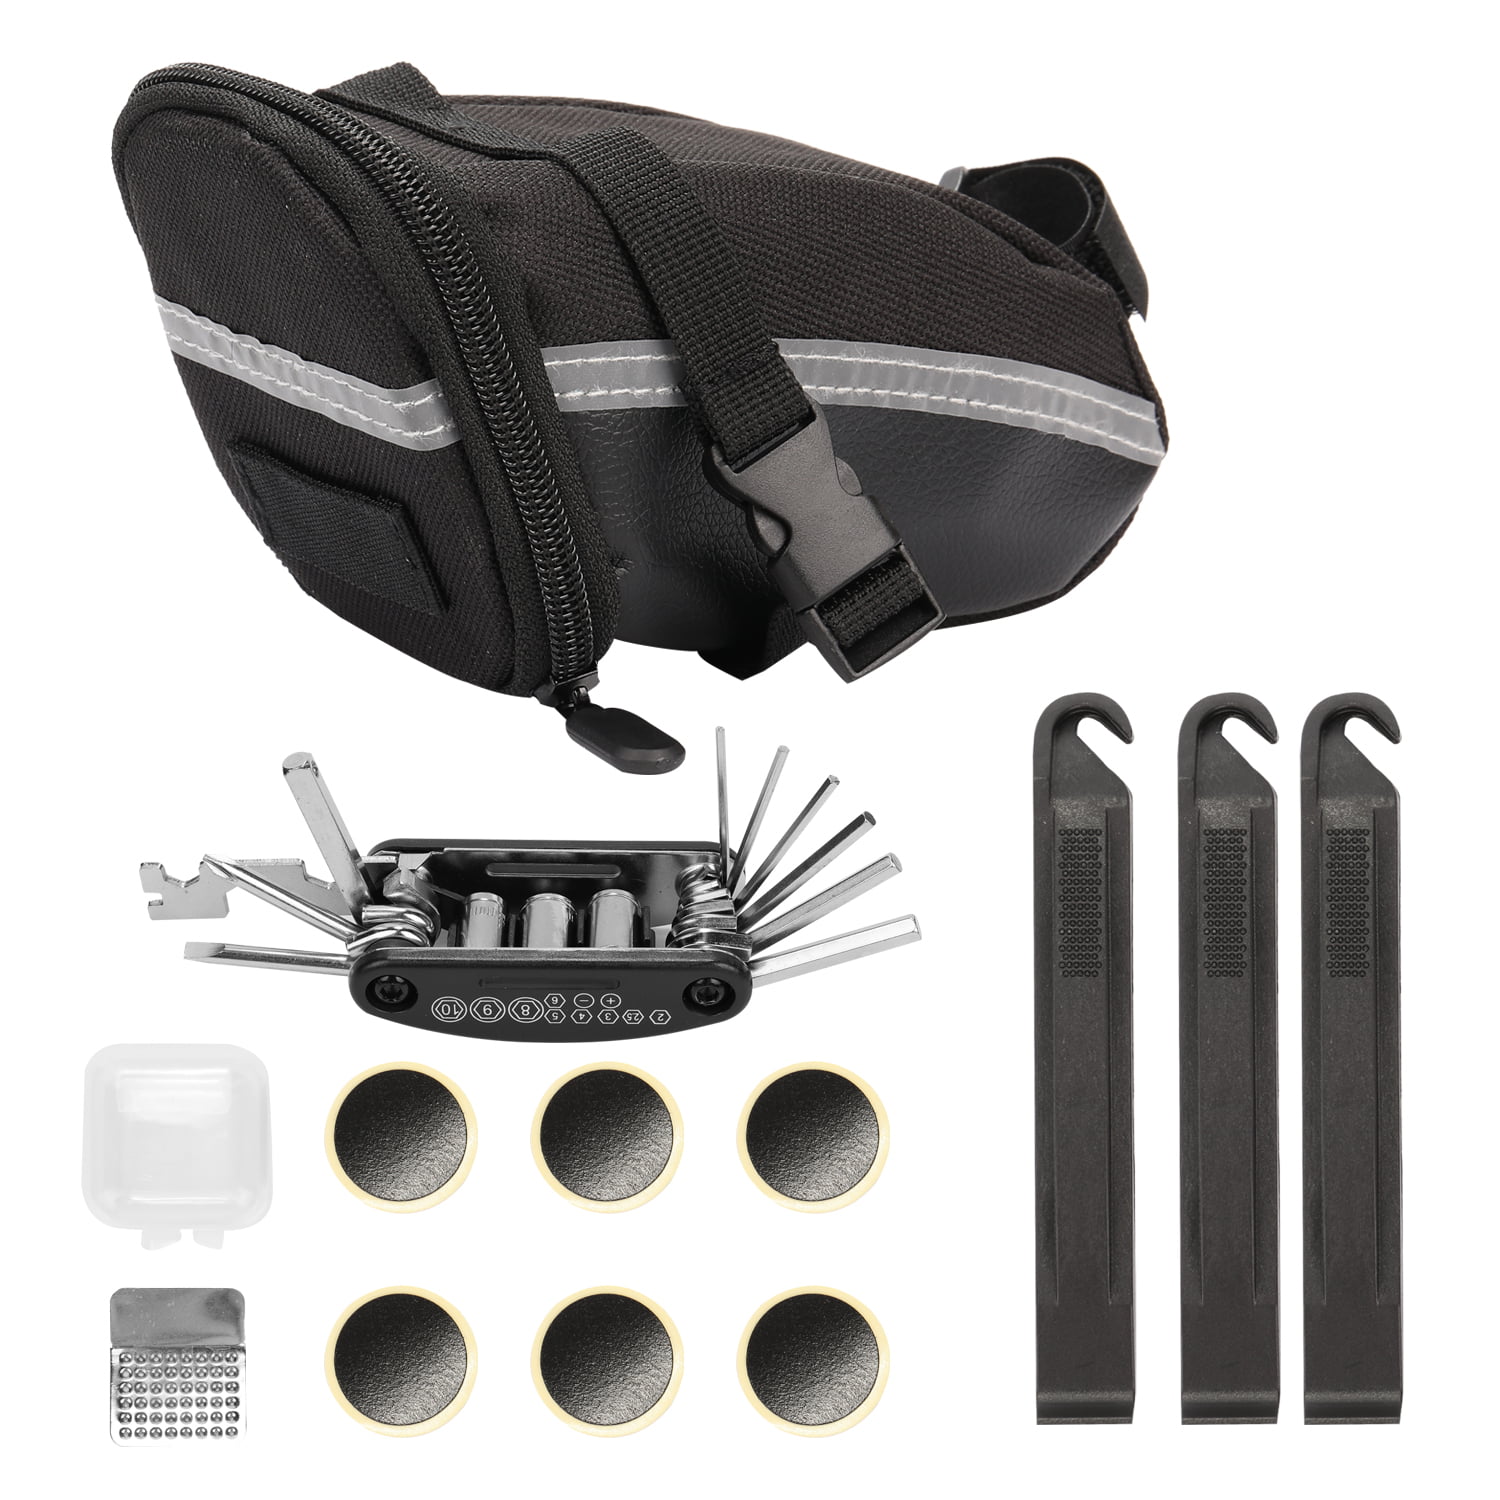 Bike Repair Tool Kits Bicycle Saddle Bag Cycling Seat Pack 16 in 1 Tool Kit K2F5 